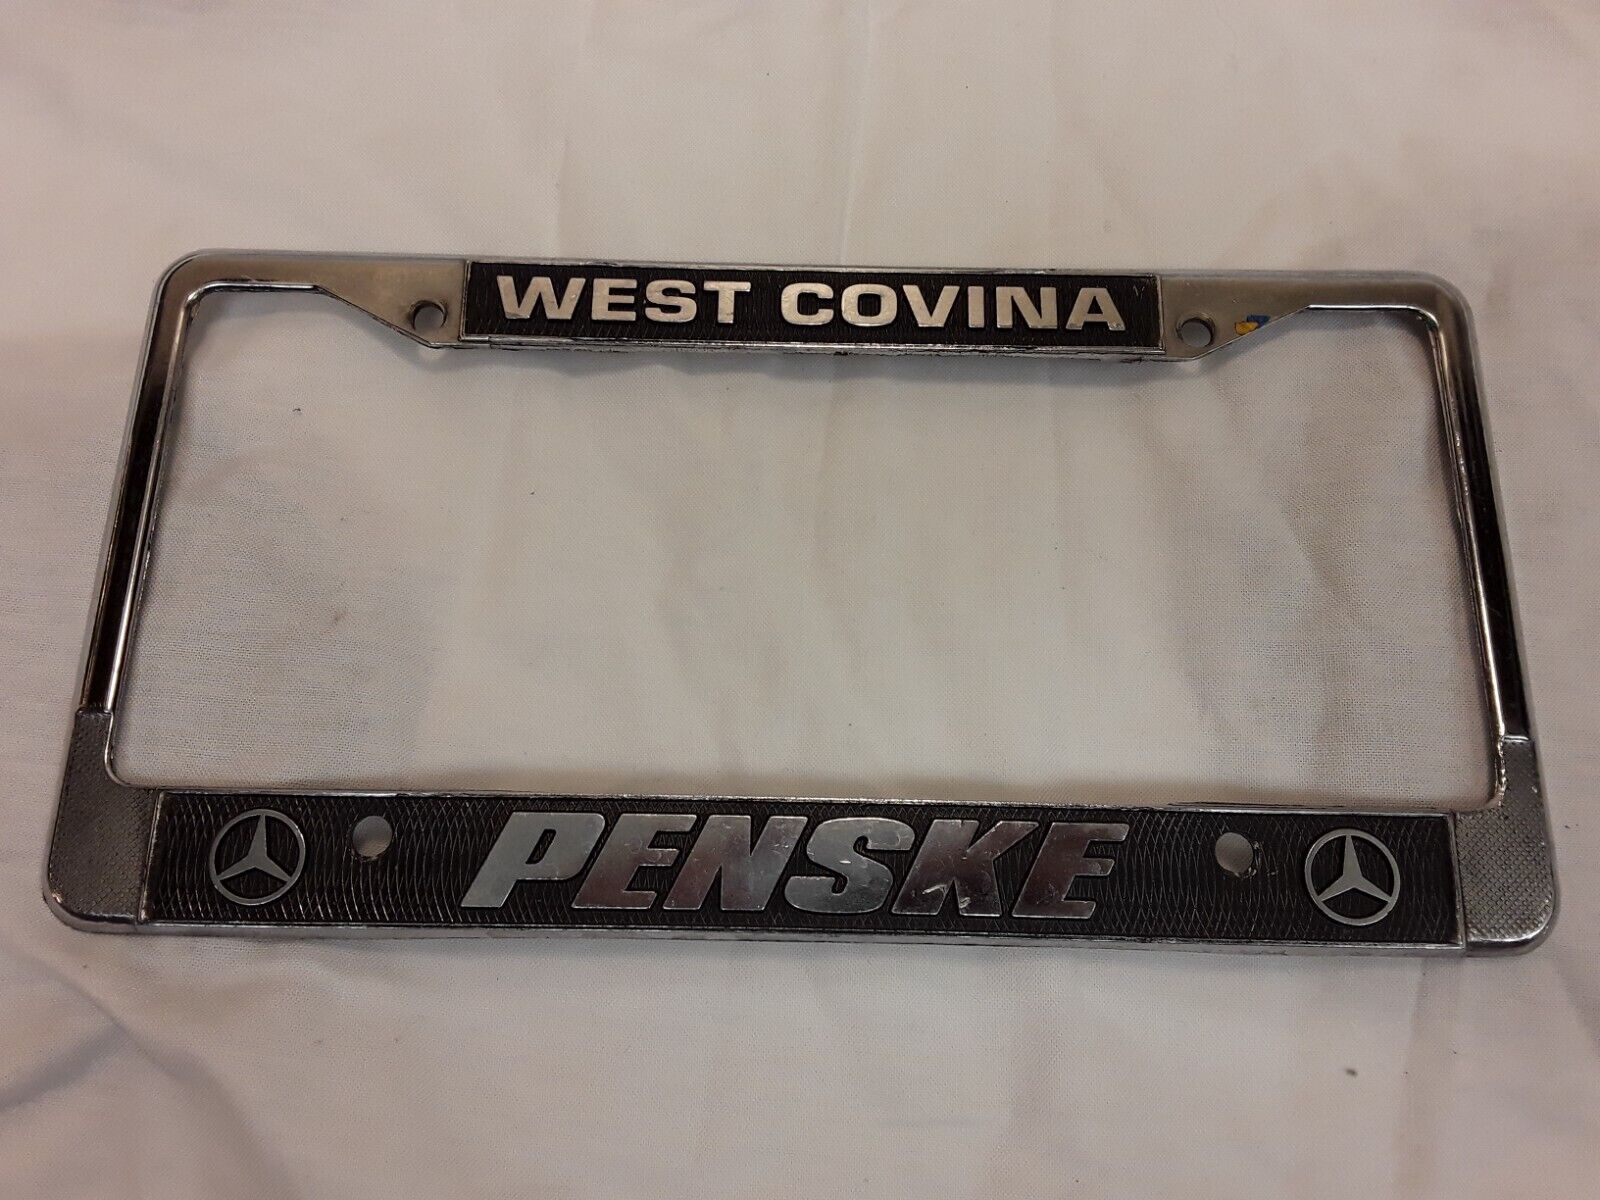 West Covina Penske Mercedes California Car Dealership Metal License Plate Frame 